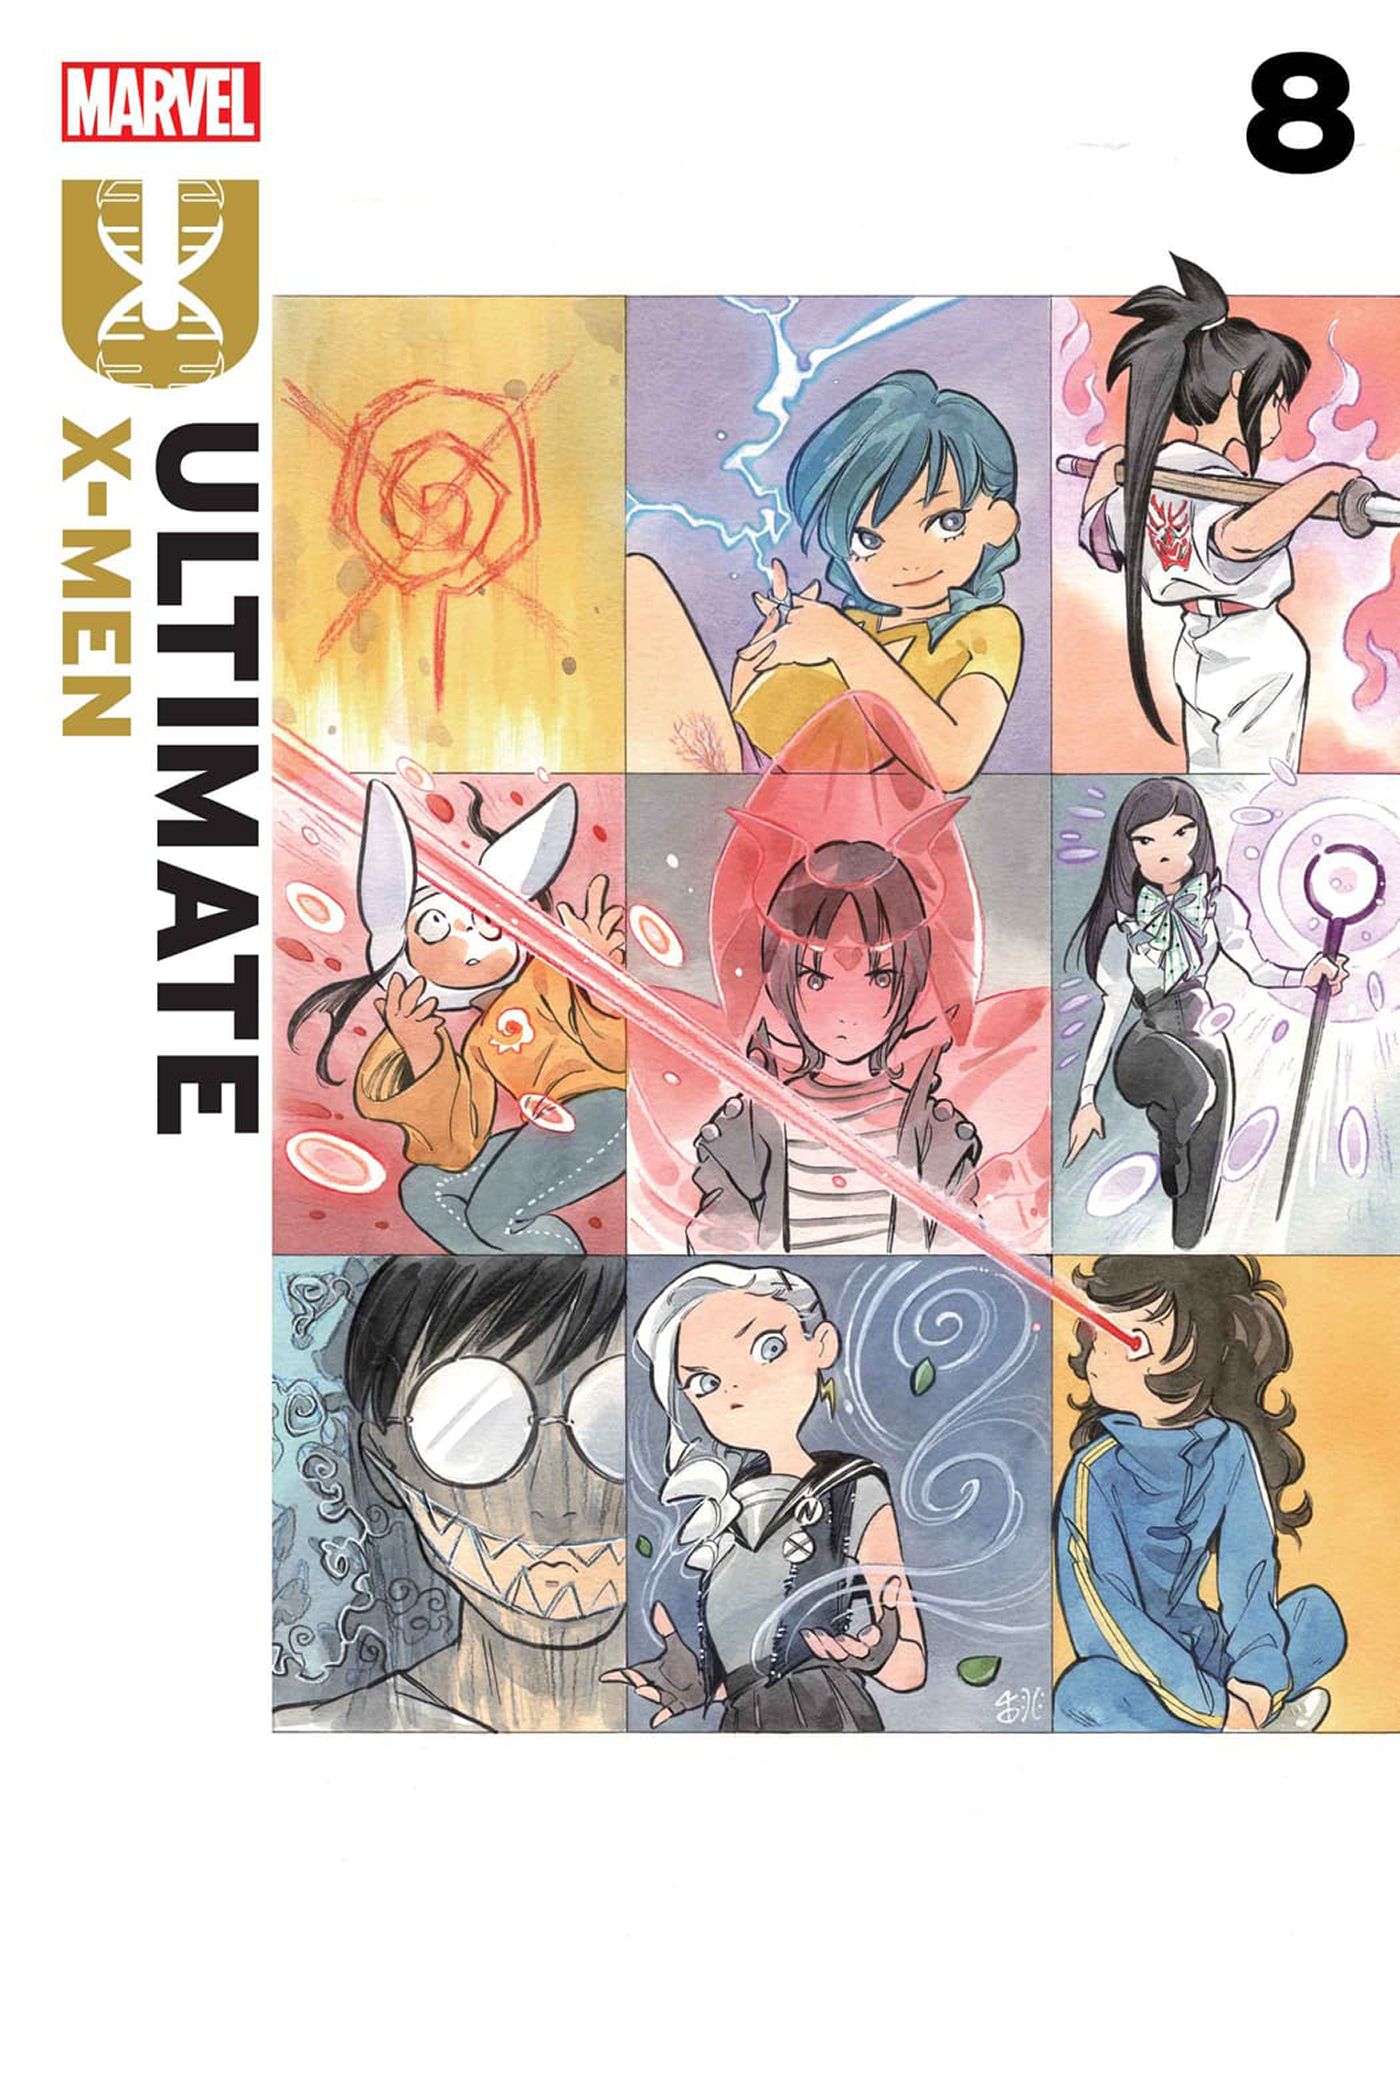 Capa Ultimate X-Men #8 por Peach Momoko